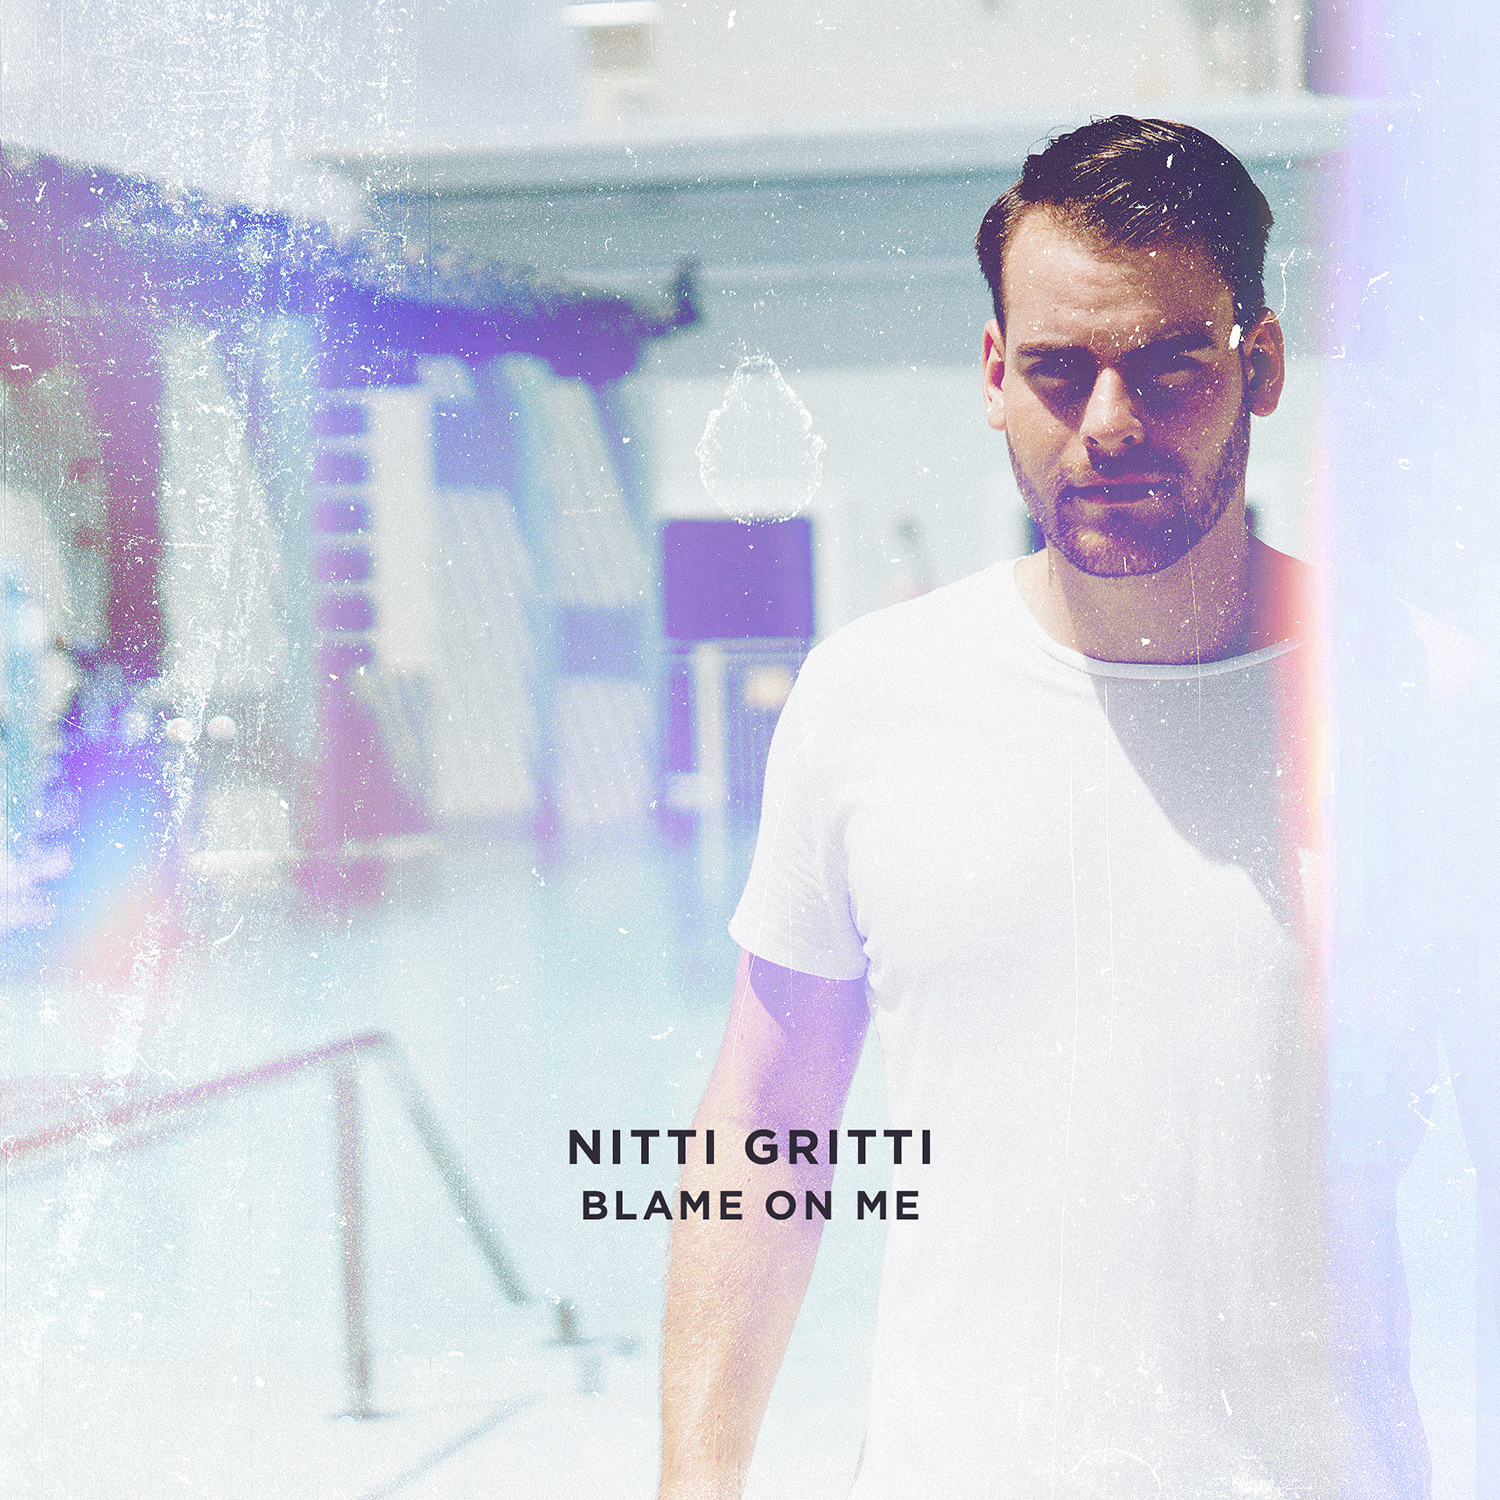 Nitti Gritti – “Blame On Me”